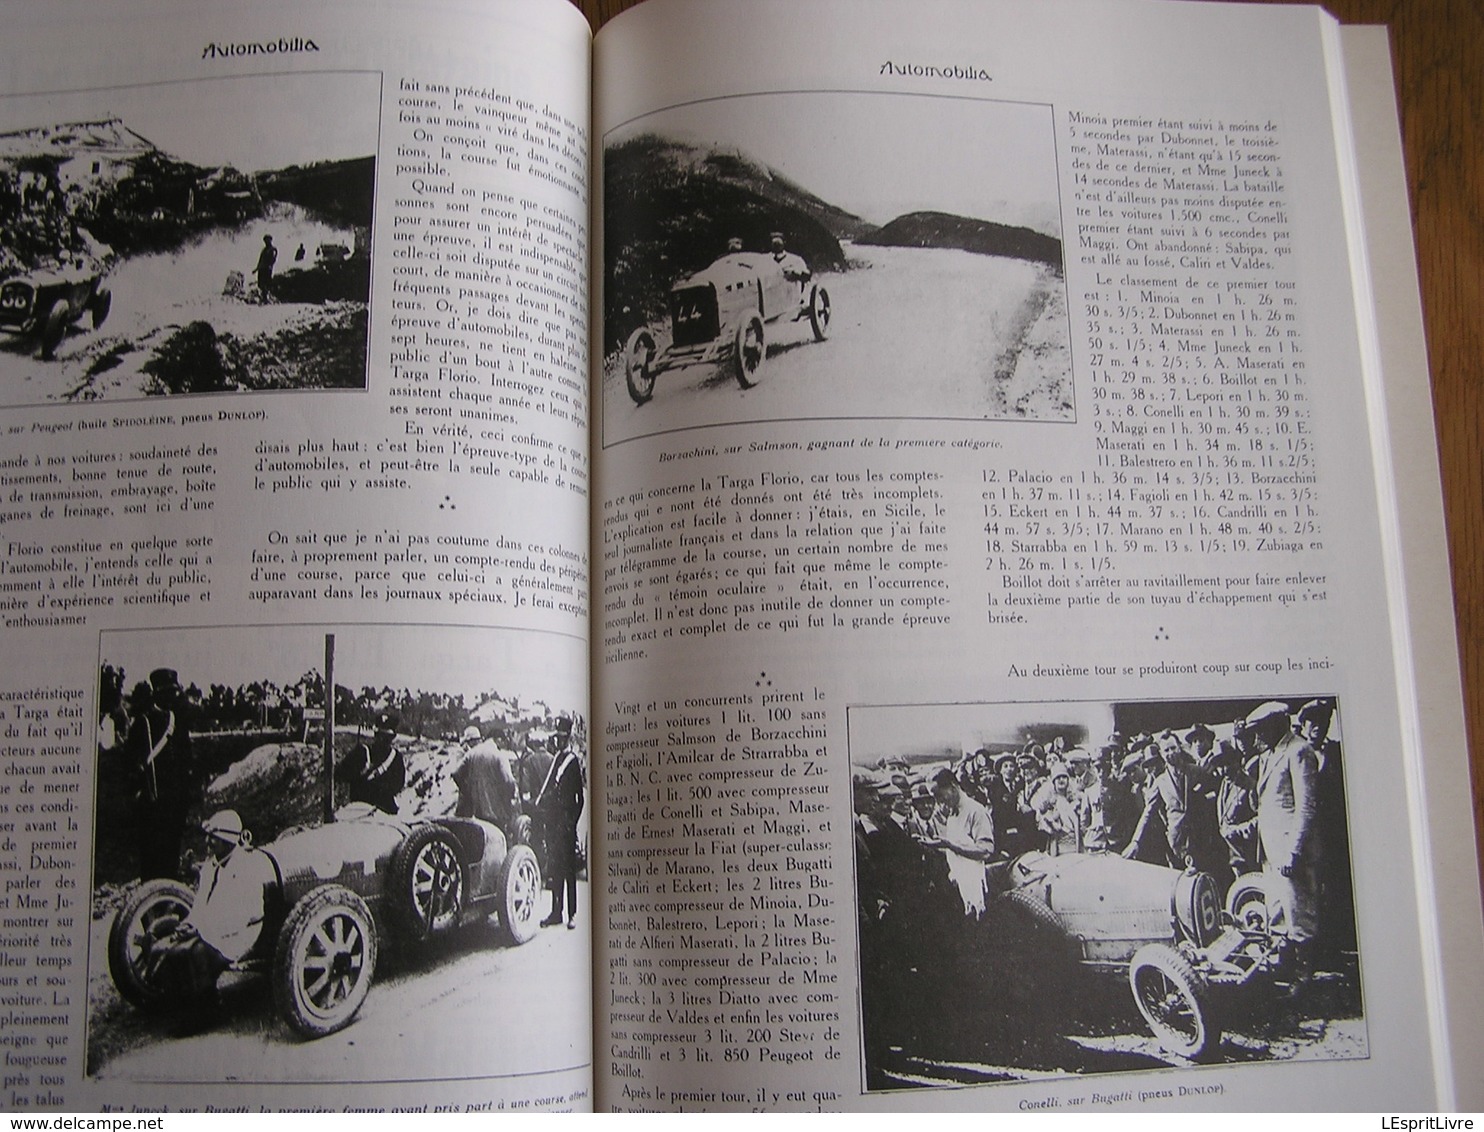 1920 1940 BUGATTI EN COURSE Régionalisme Molsheim Alsace France Automobile Grand Prix Monaco 24 H Le Mans Miramas Auto